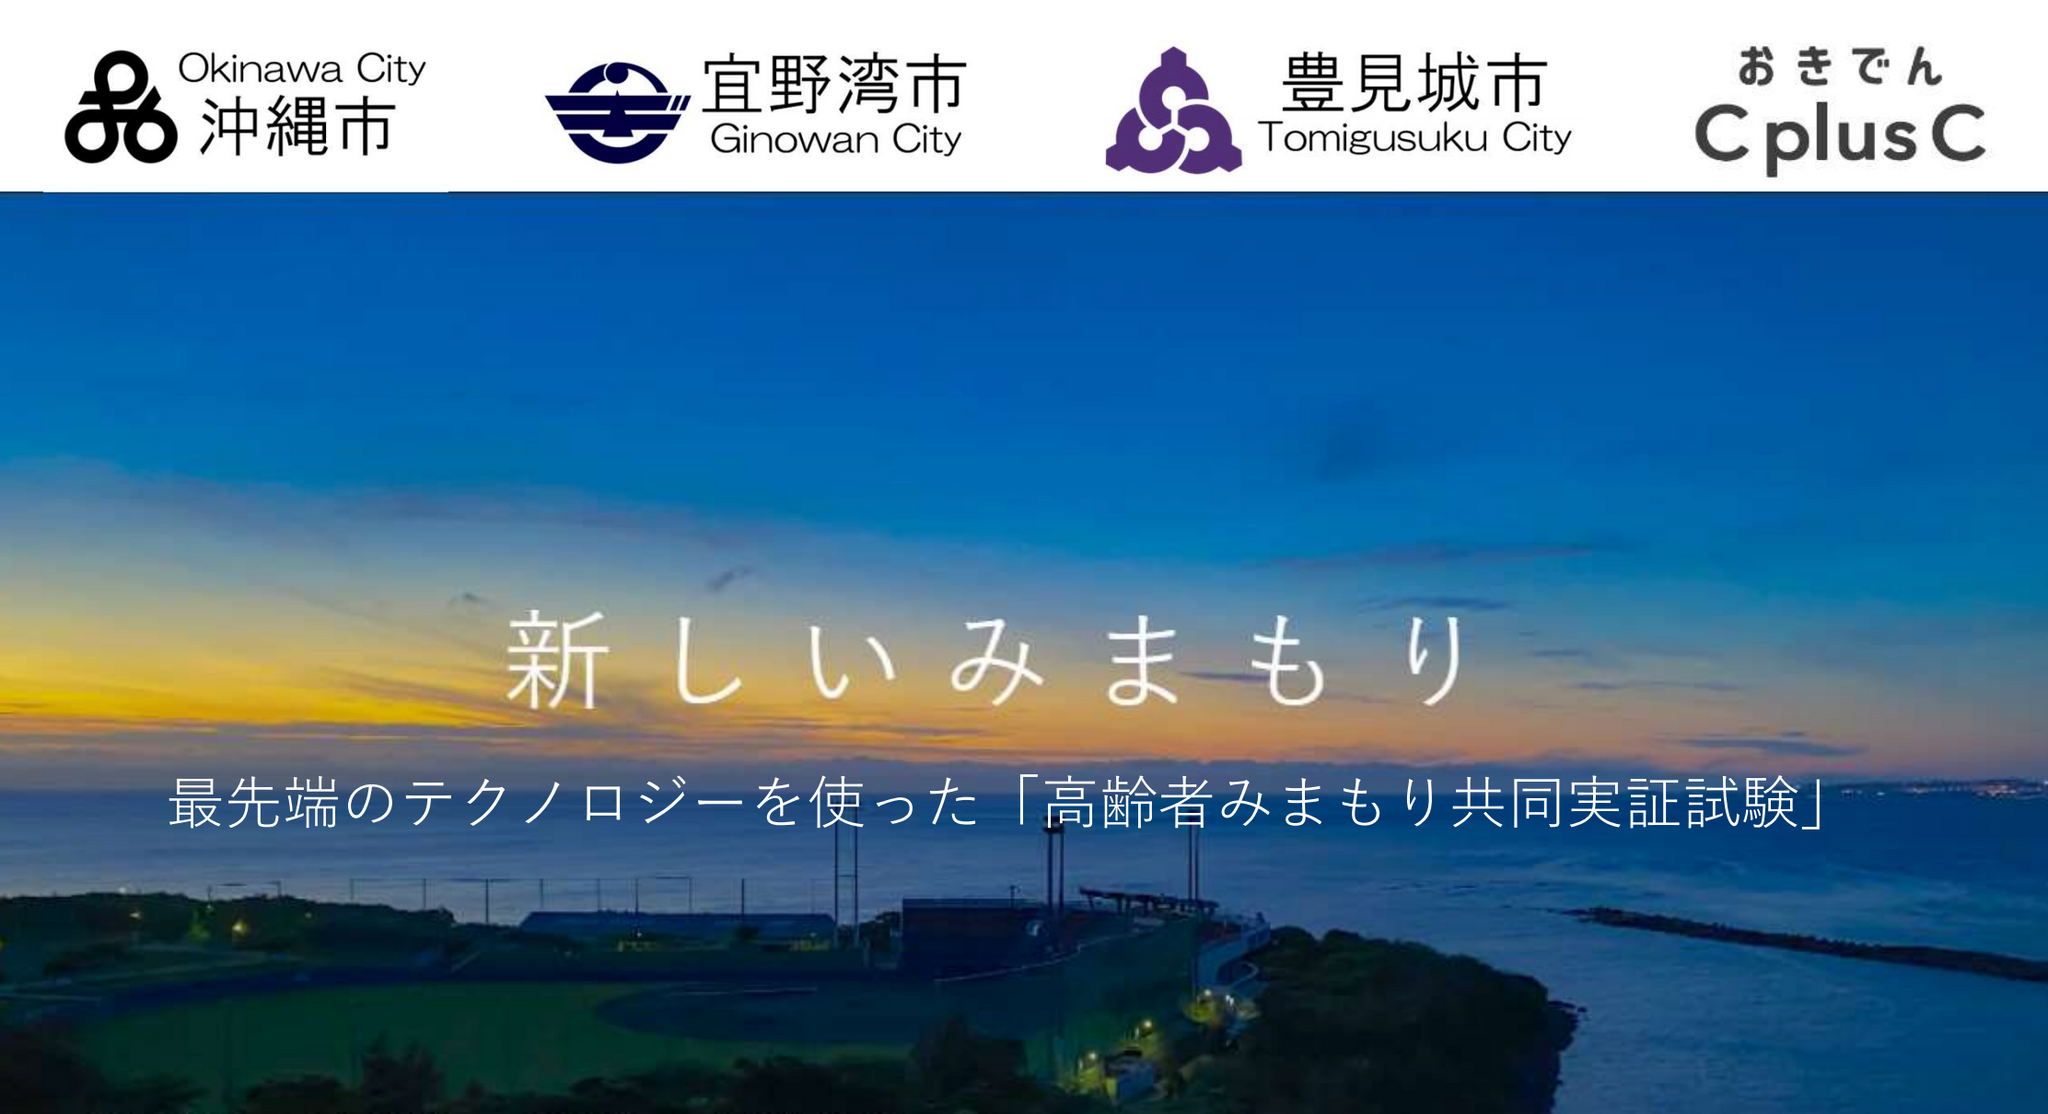 沖縄電力の子会社による「次世代みまもりサービス」の実用化に協力するための覚書を締結しました